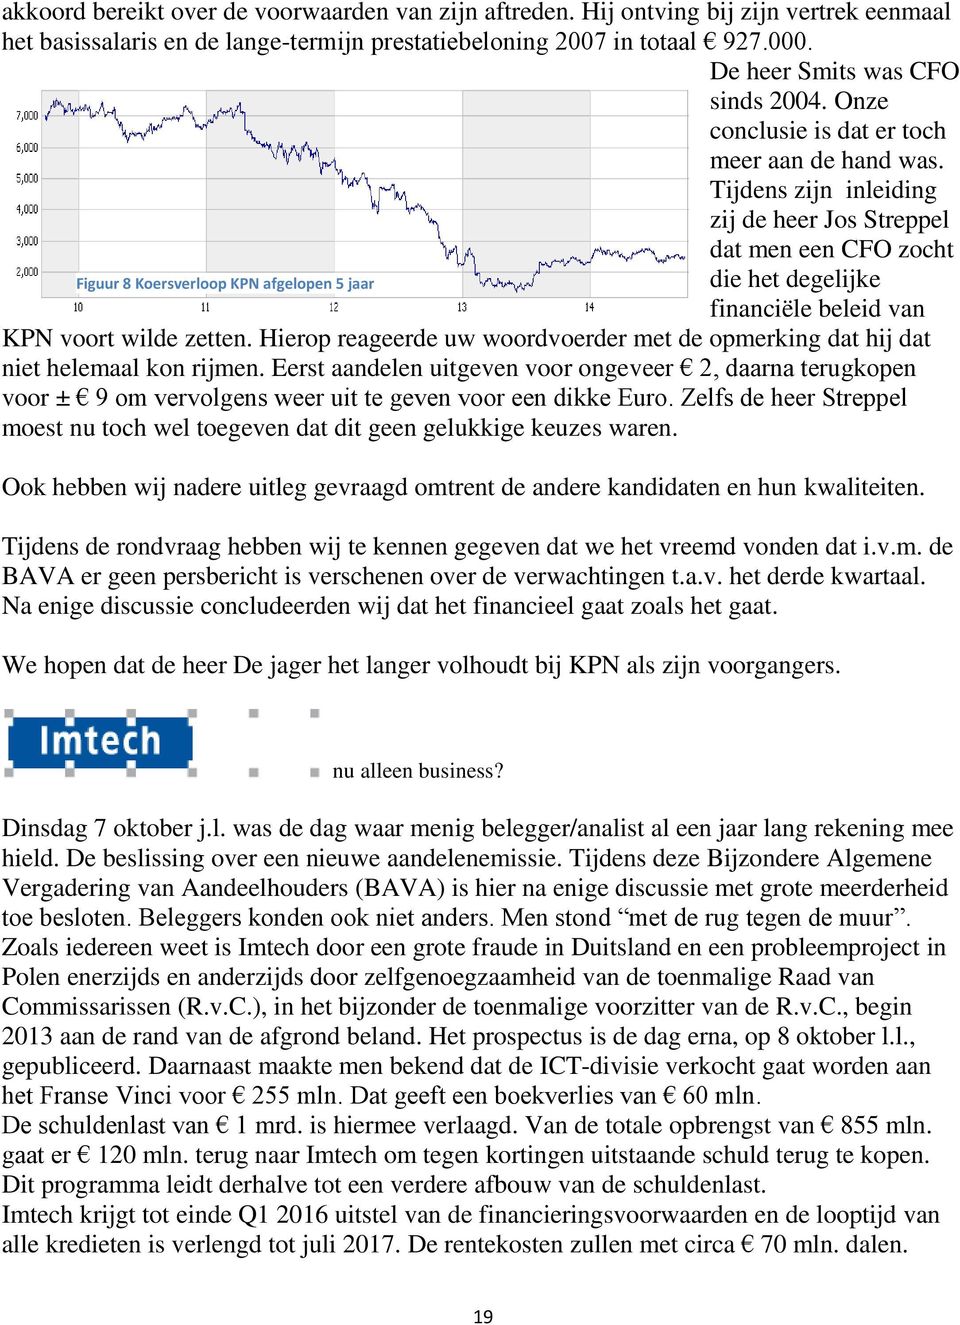 Tijdens zijn inleiding zij de heer Jos Streppel dat men een CFO zocht Figuur 8 Koersverloop KPN afgelopen 5 jaar die het degelijke financiële beleid van KPN voort wilde zetten.